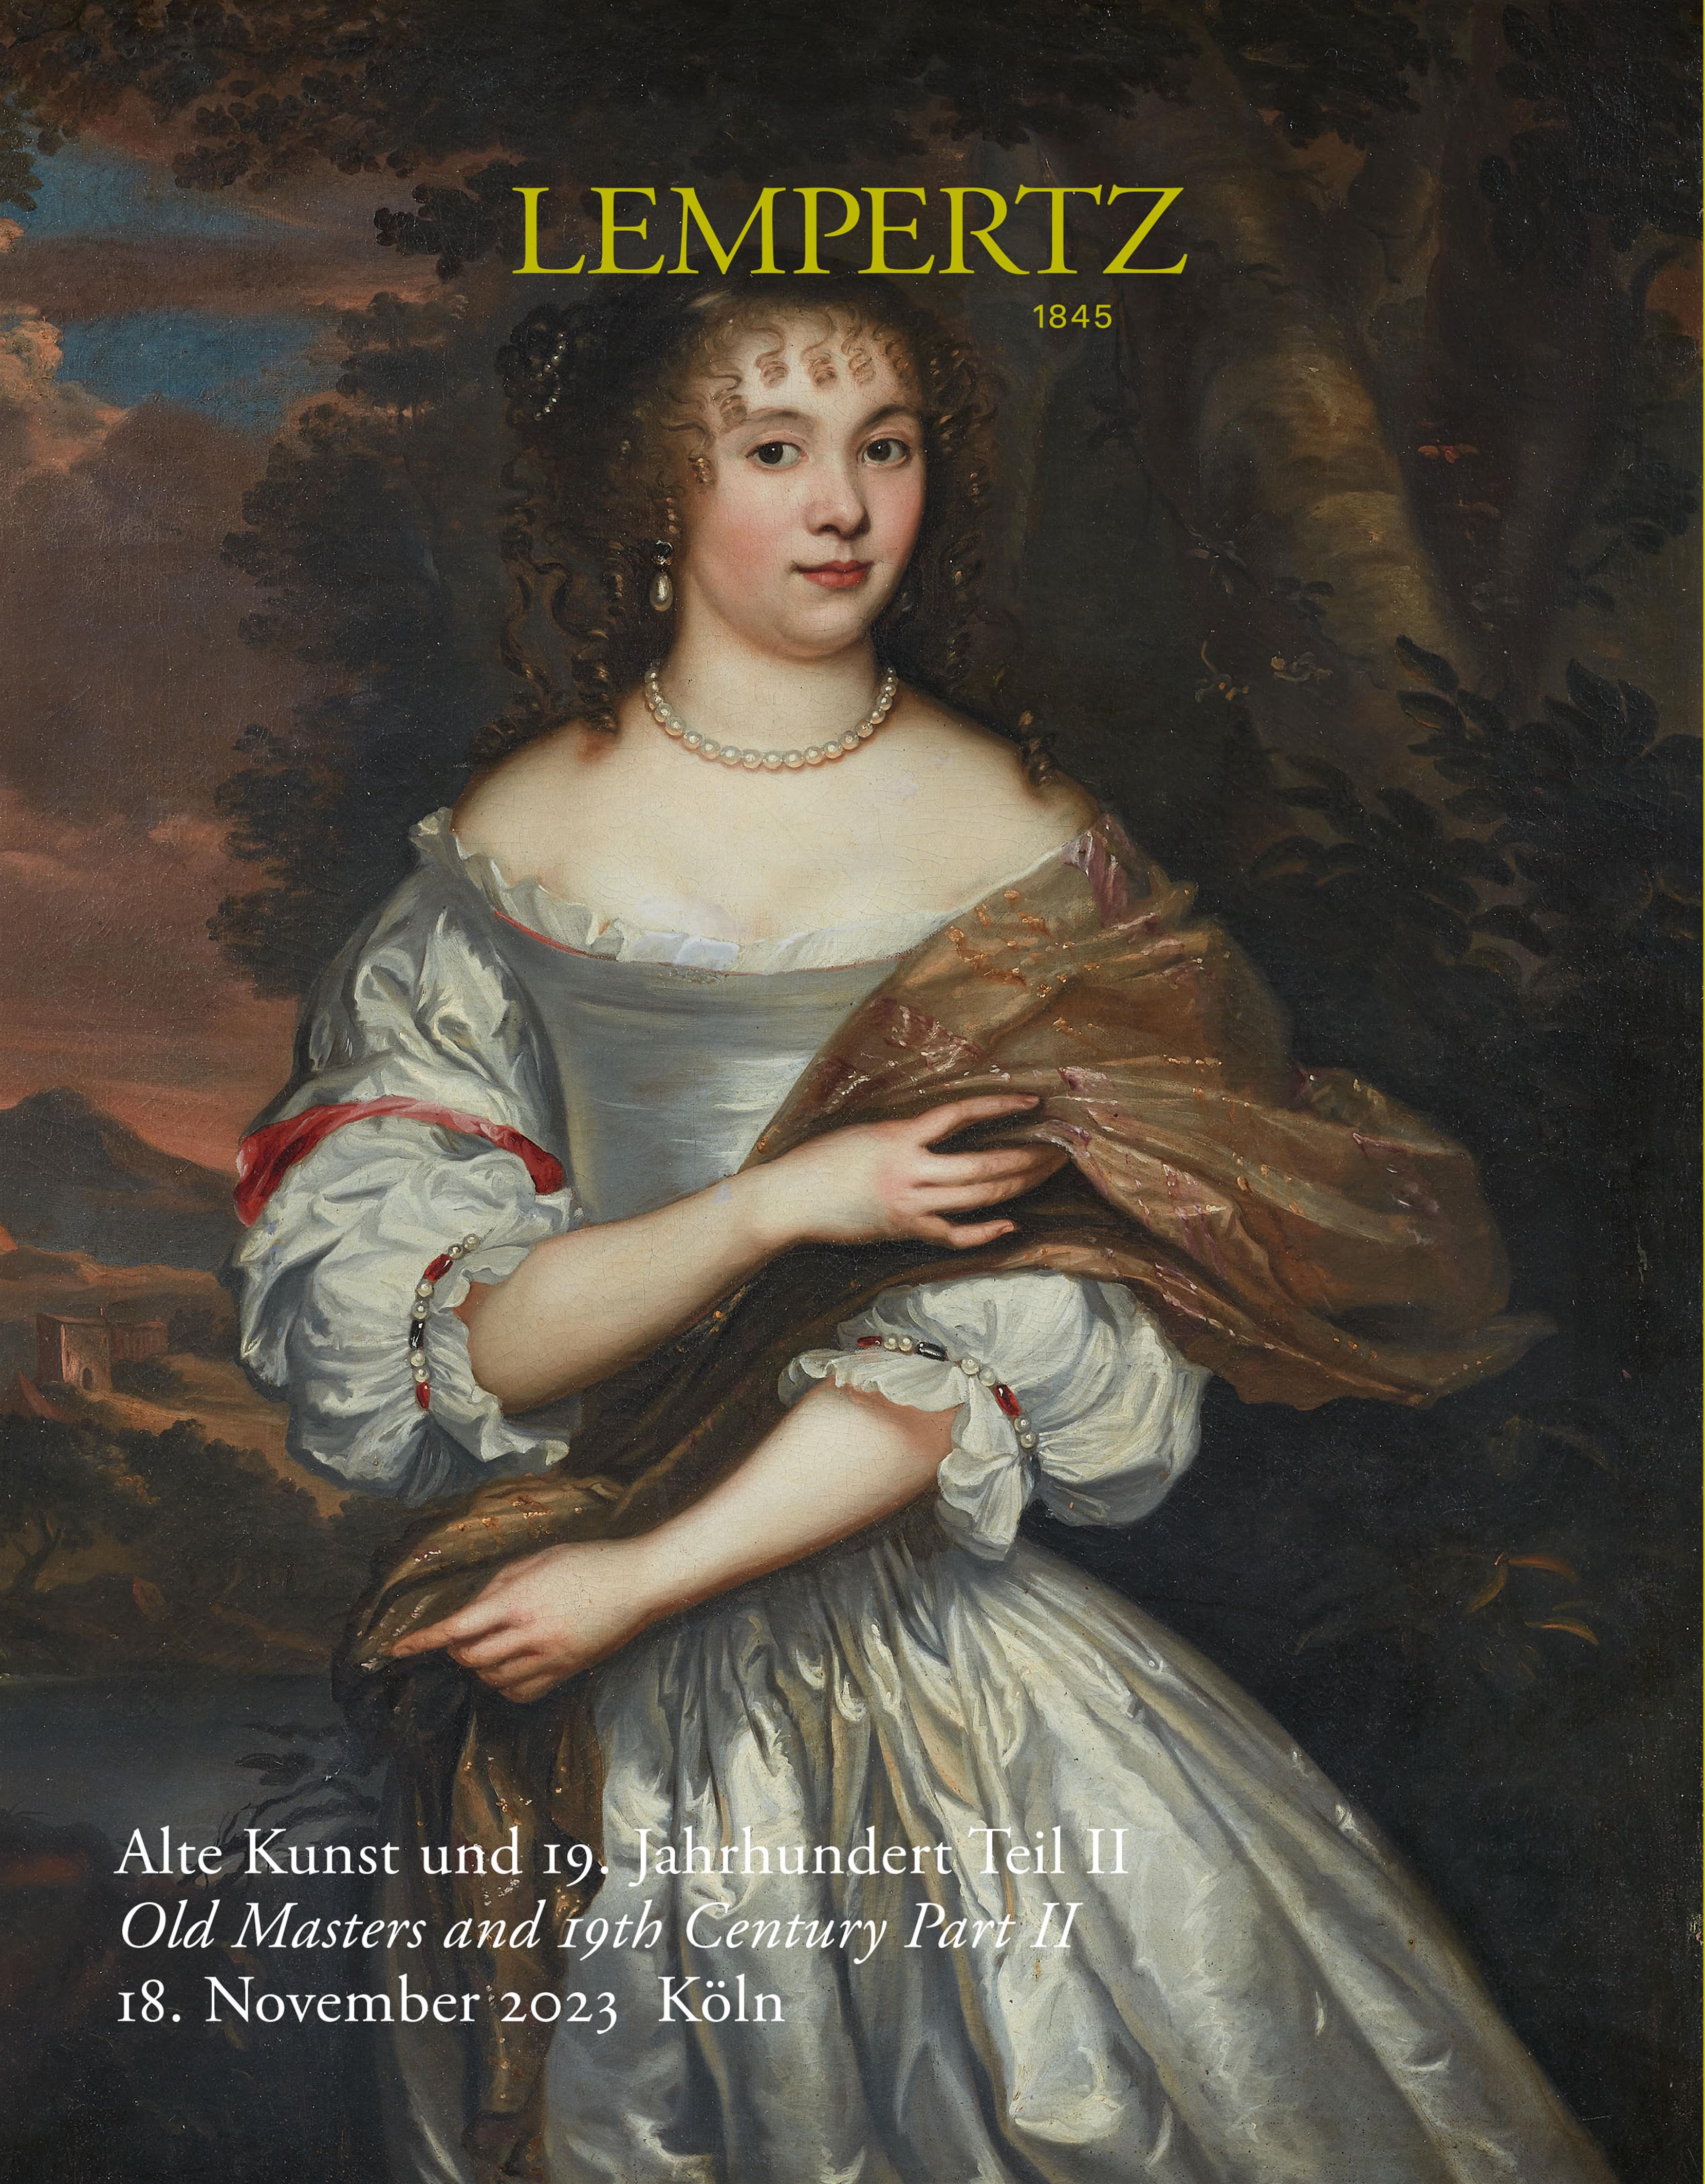 Auktionskatalog - Alte Kunst und 19. Jahrhundert, Teil II - Online Katalog - Auktion 1231 – Ersteigern Sie hochwertige Kunst in der nächsten Lempertz-Auktion!